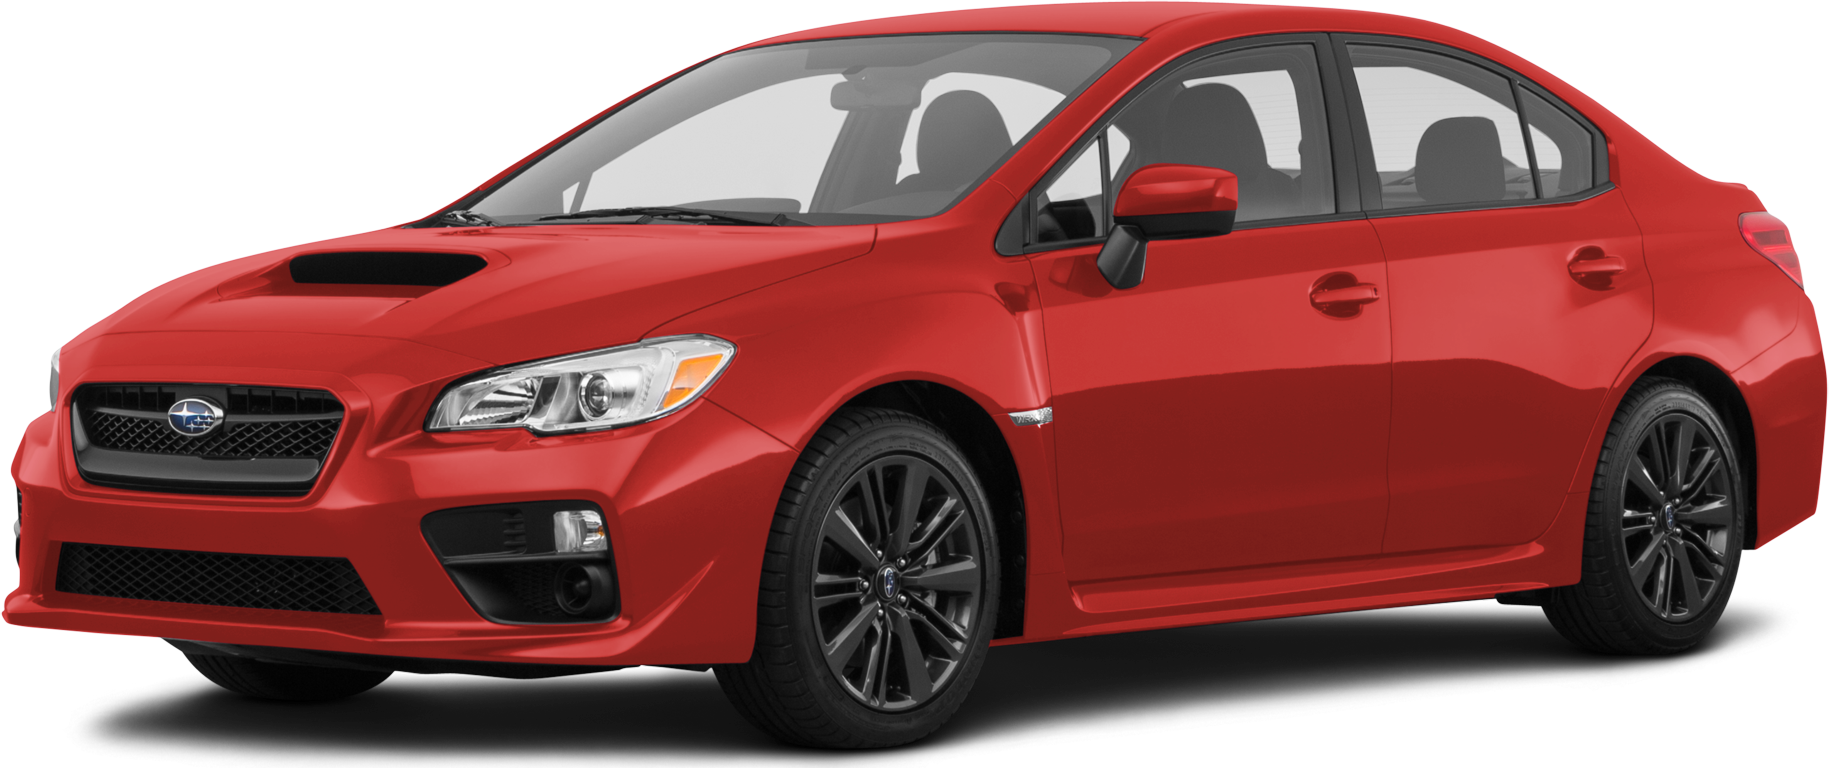 2017 Subaru Impreza Price, Value, Ratings & Reviews